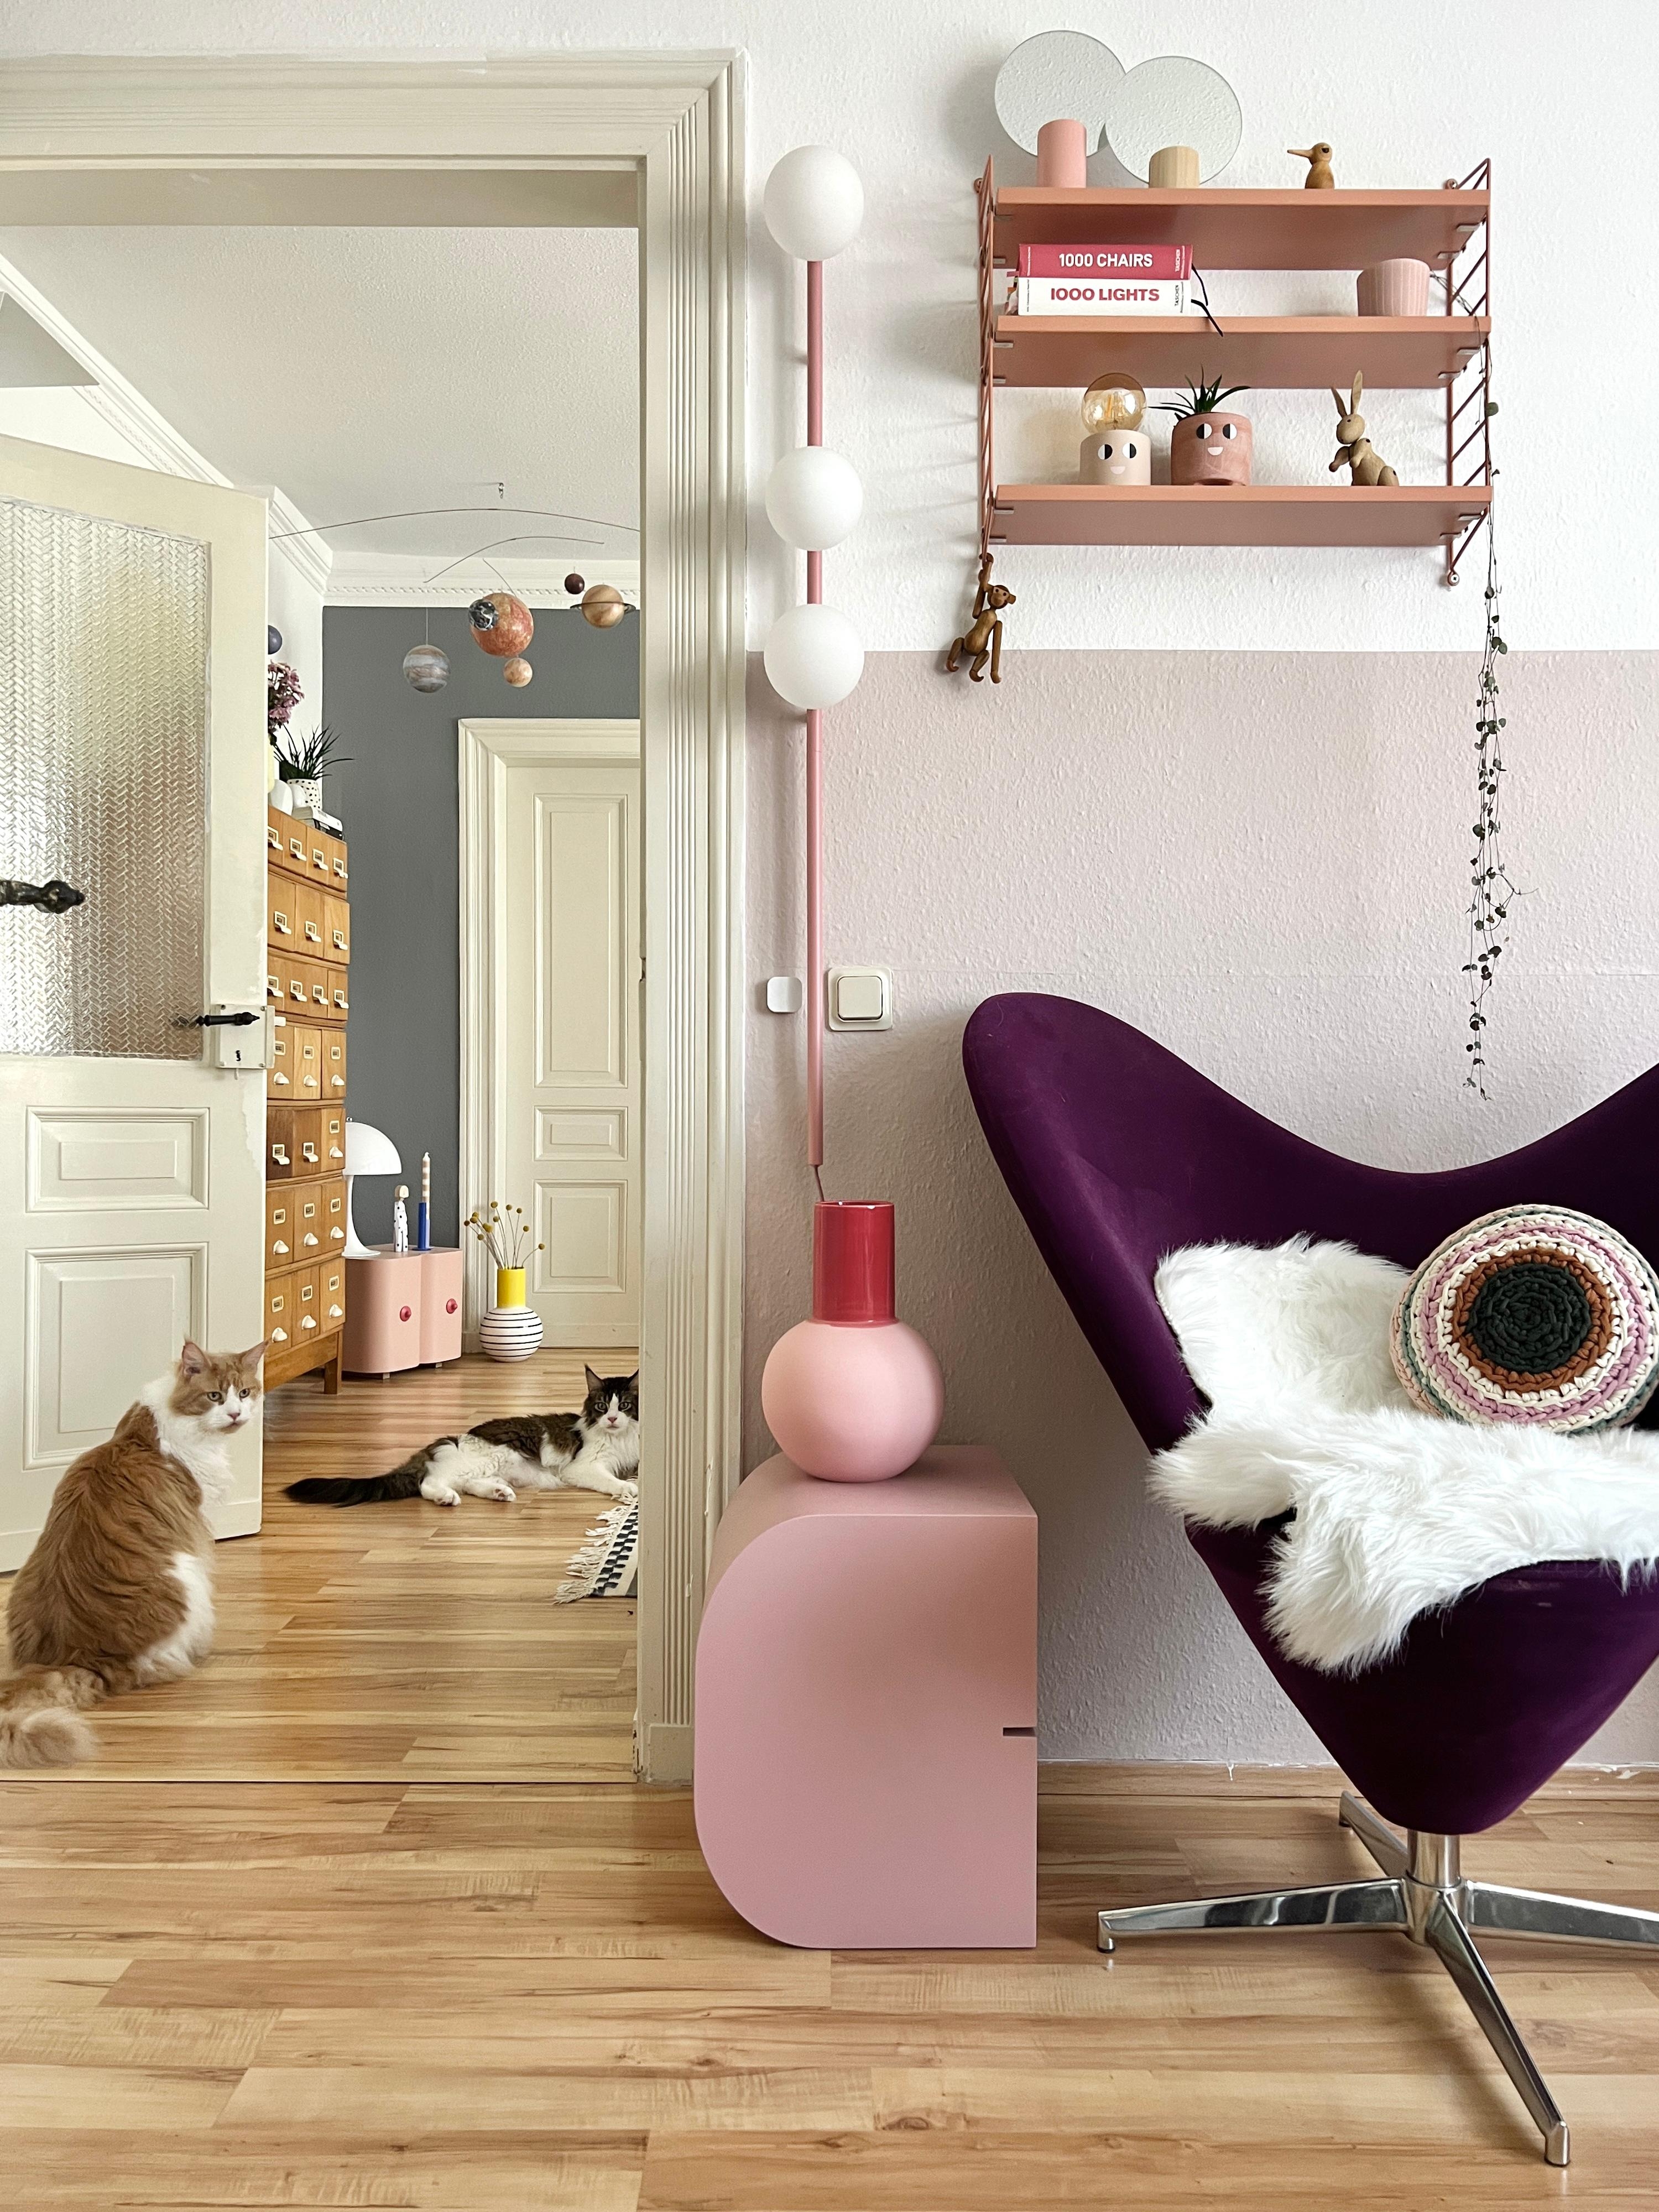 #interior #interiordesign #couchliebt #wohnzimmer #katze #haustier #rosa #stringregal #buchstabenhocker #vintage #sessel